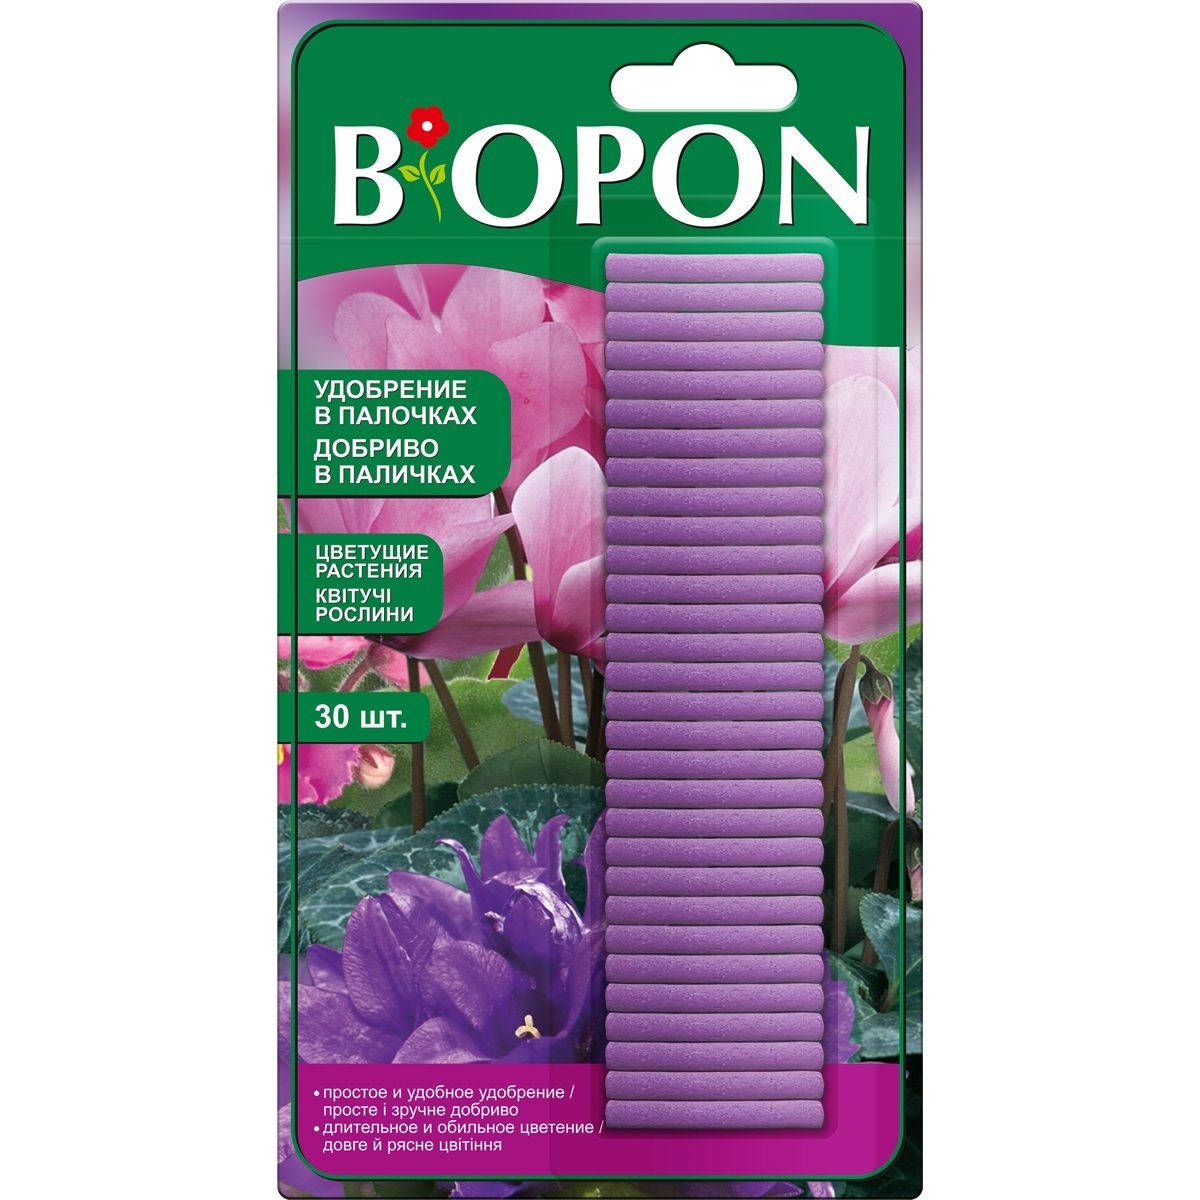 Удобрение в палочках Biopon для цветущих растений, 30 шт. - фото 1